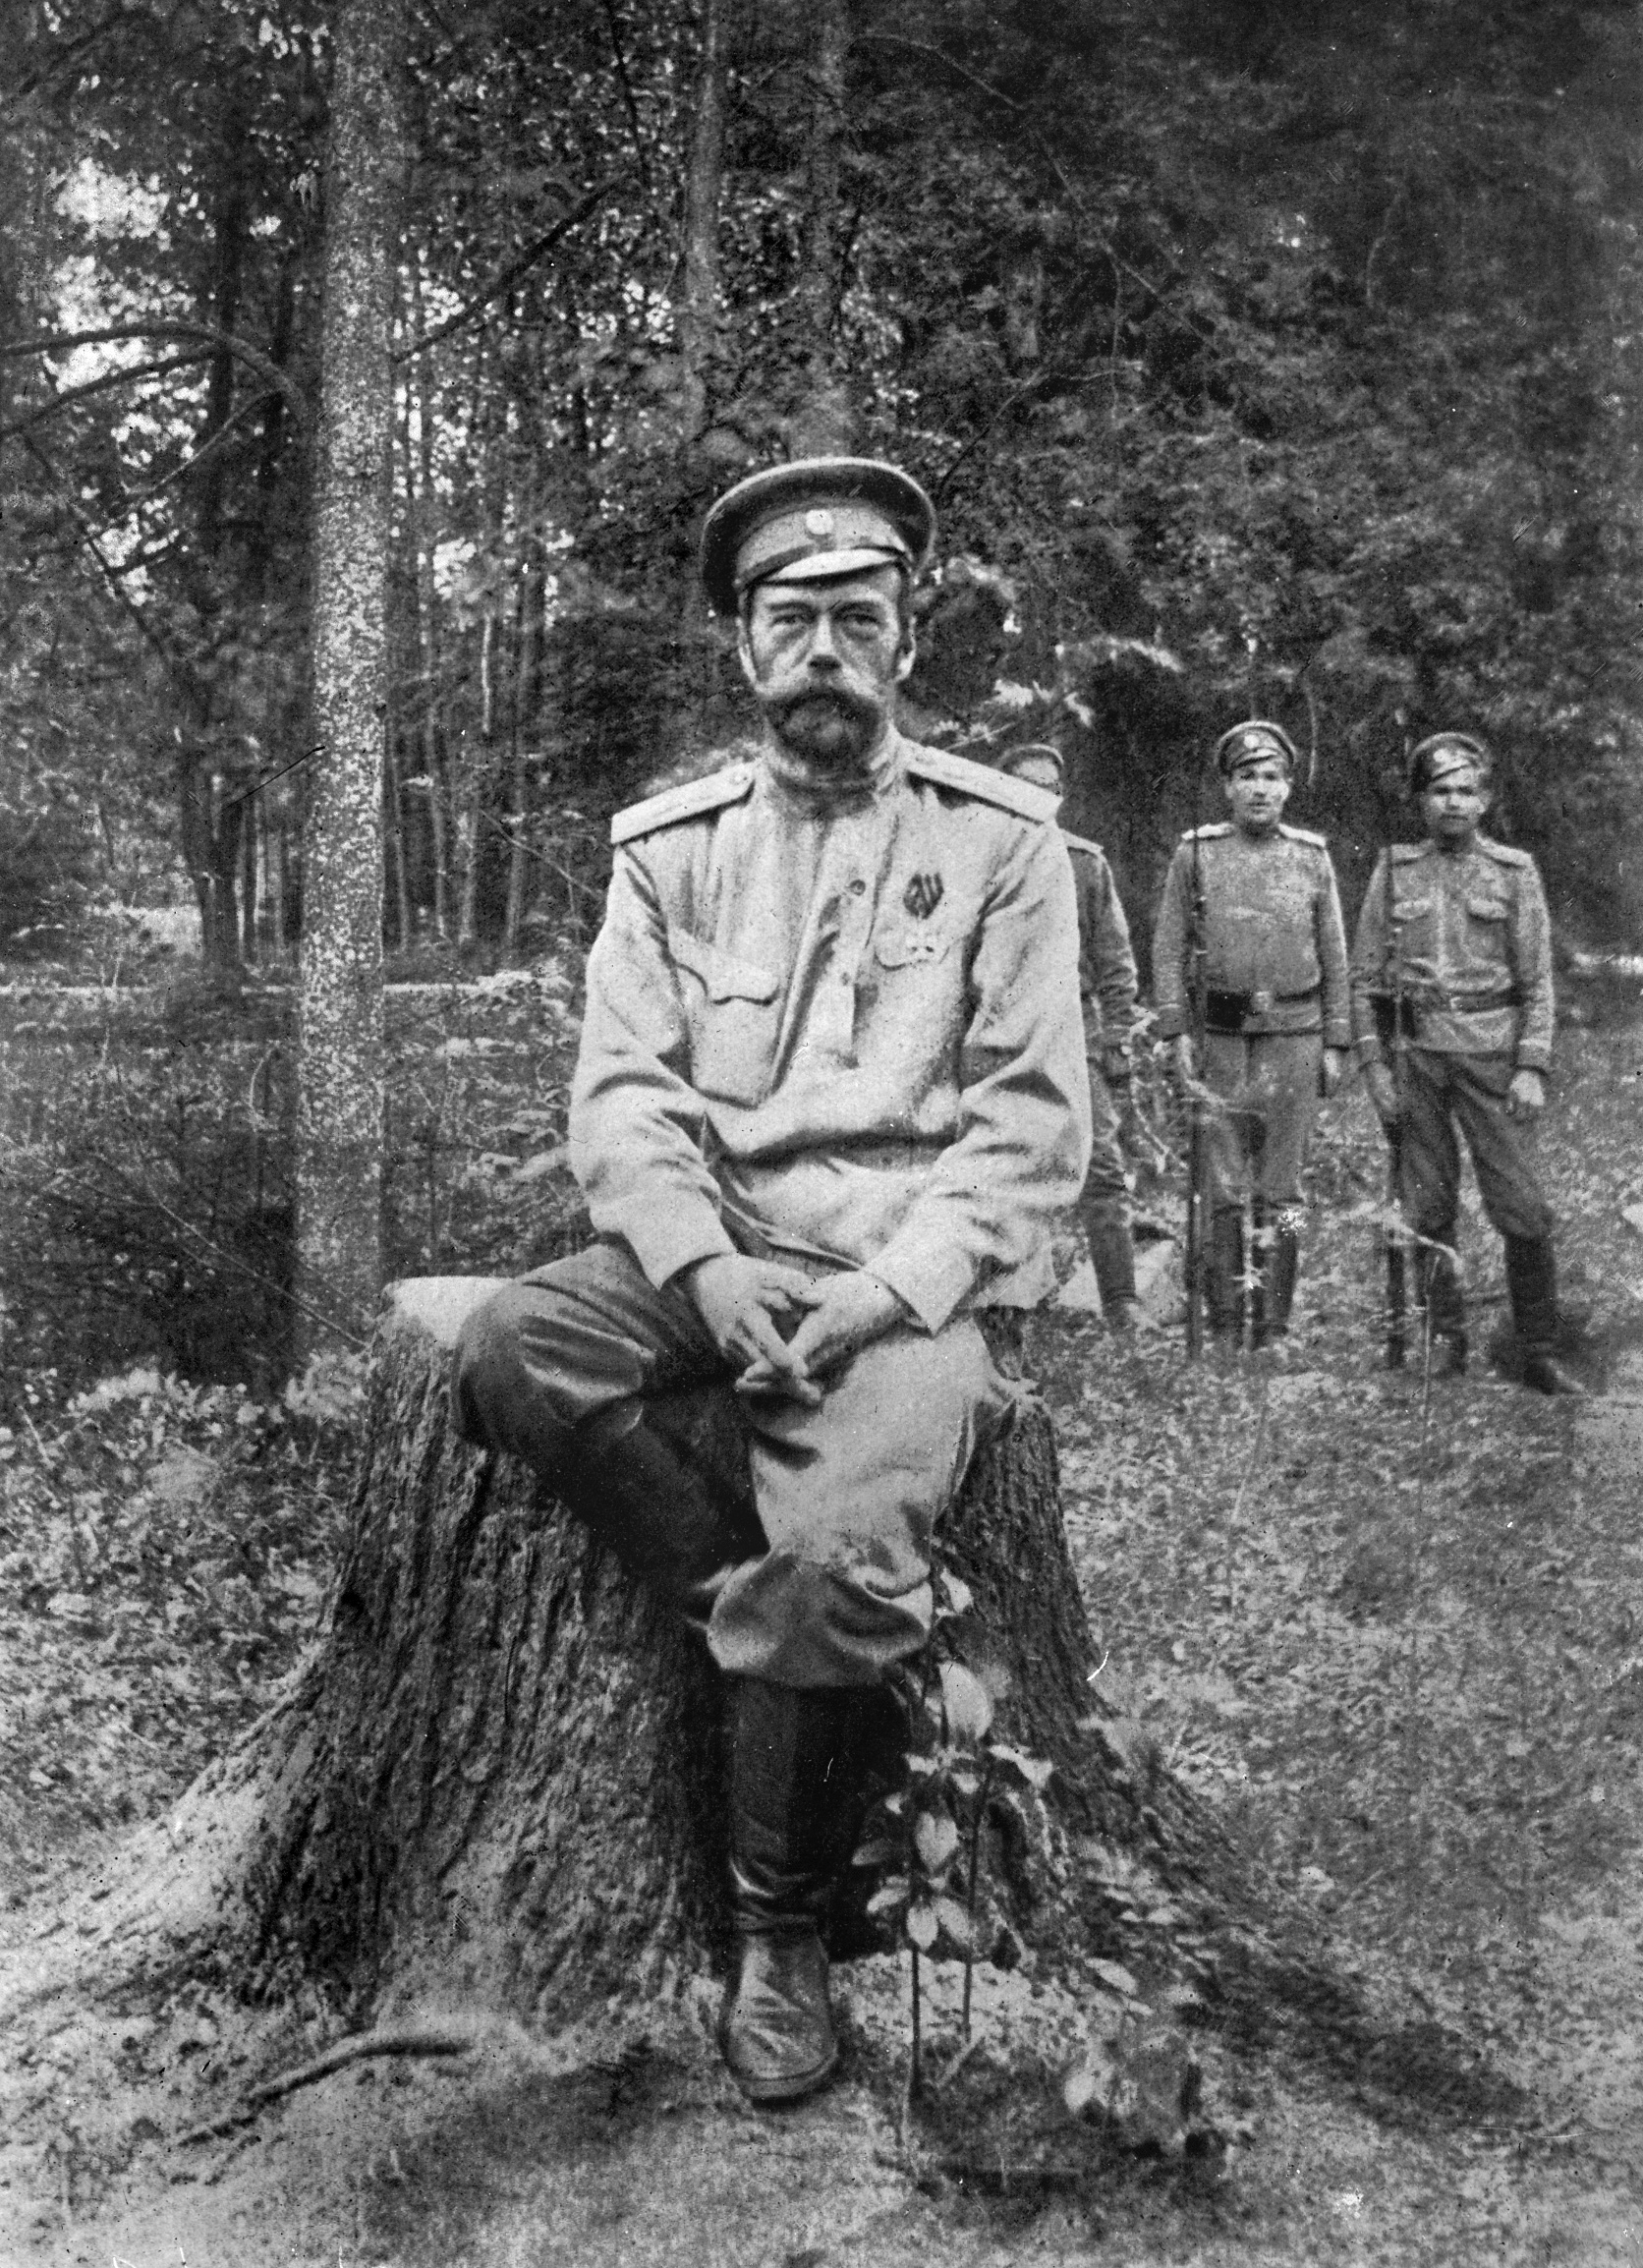 Svartvitt fotografi av en man i uniform med tillhörande hatt. Han sitter på en stubbe i skogen och tittar med allvarlig min mot kameran. I bakgrunden syns tre andra män i uniform.